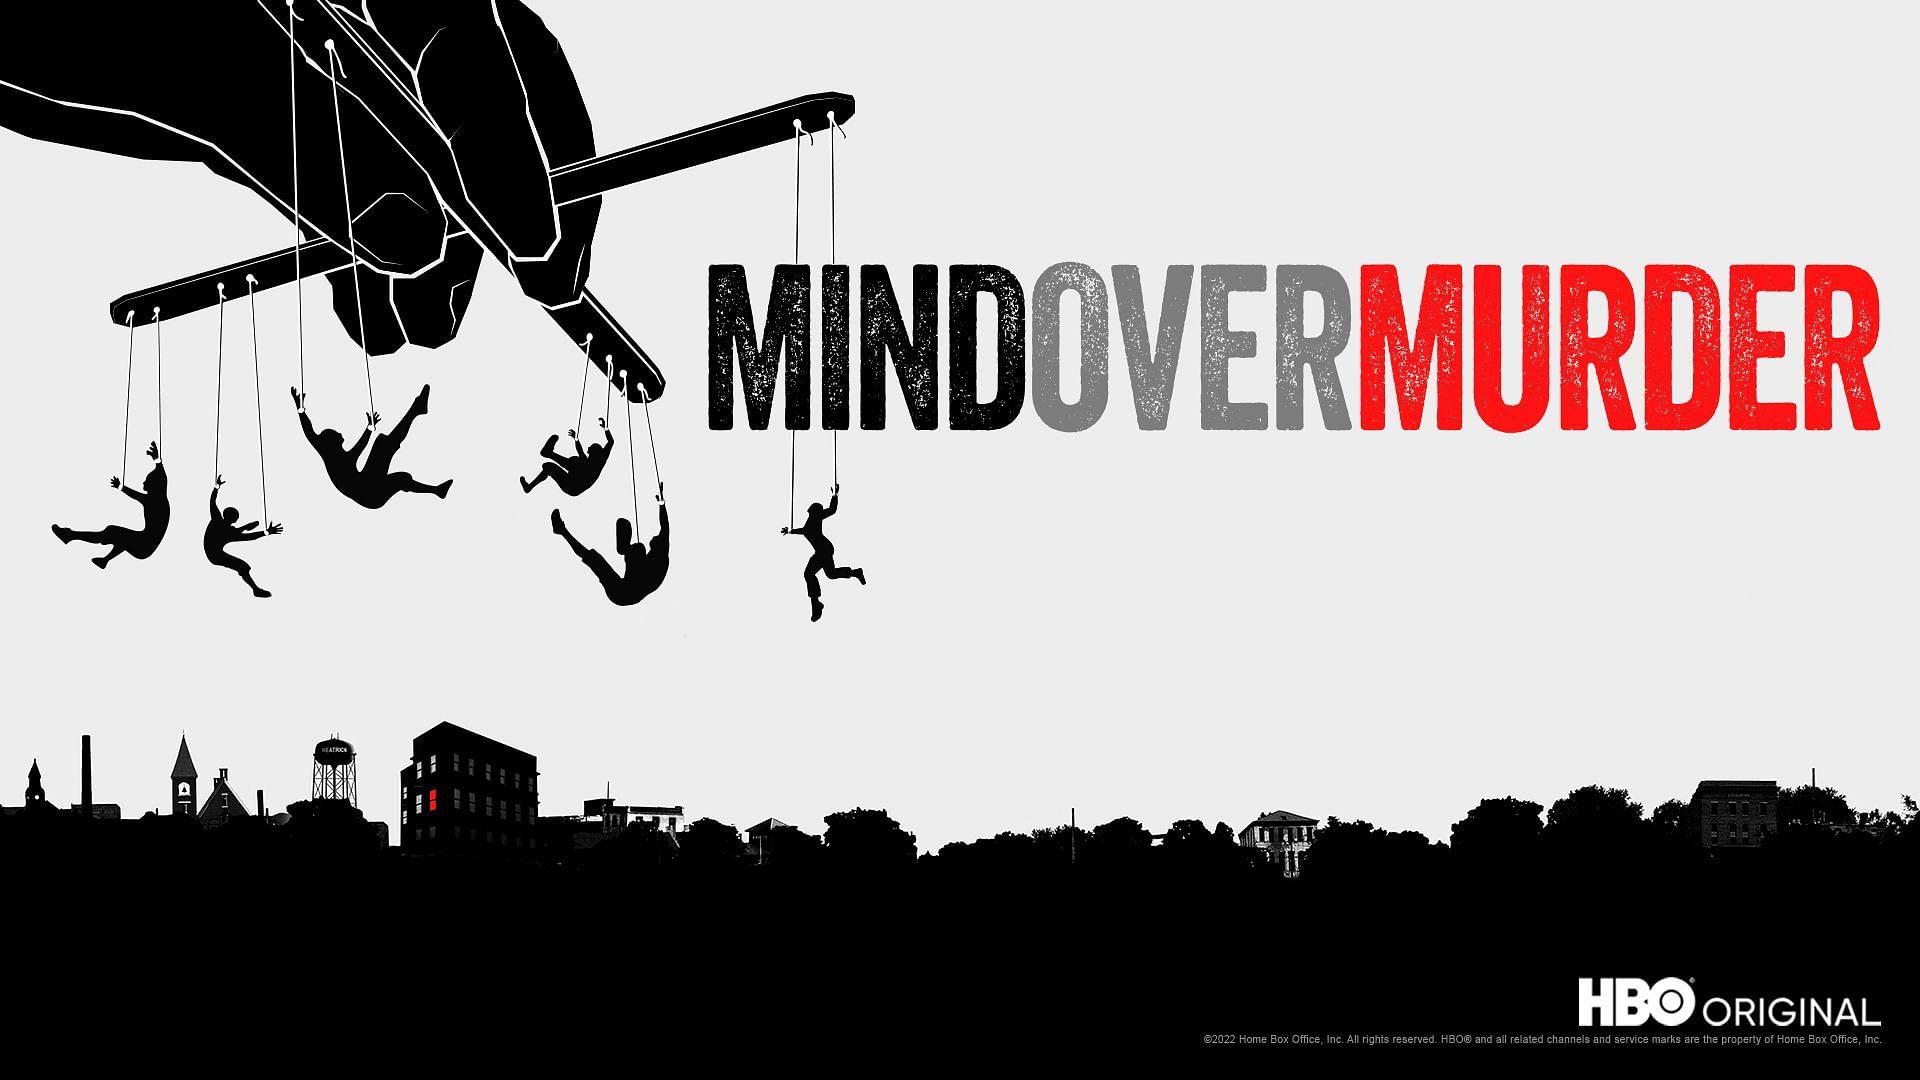 Mind Over Murder (Image via HBO)